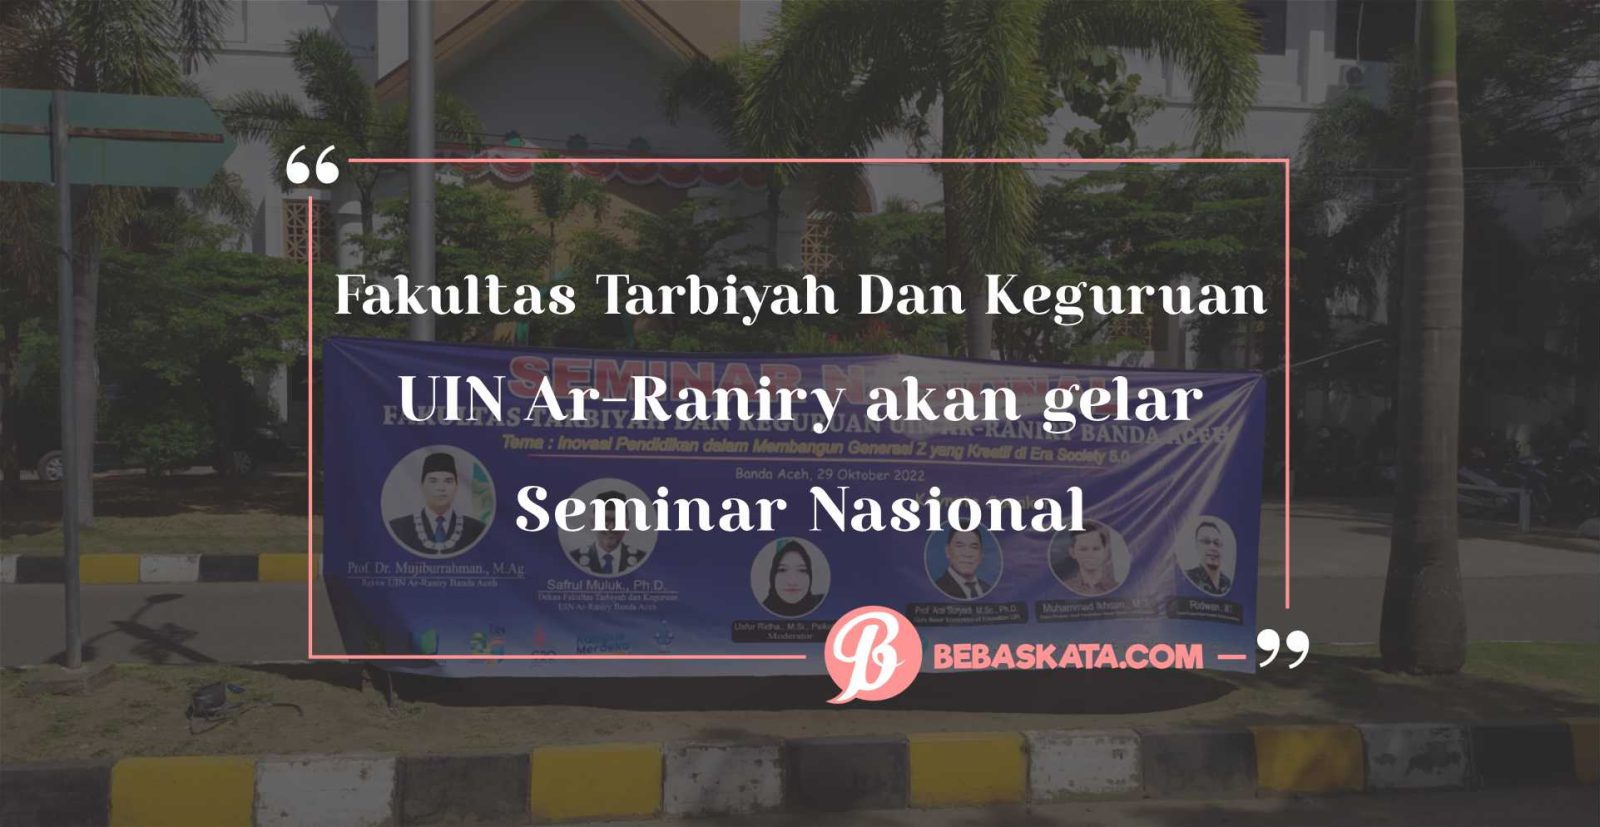 Fakultas Tarbiyah Dan Keguruan UIN Ar-Raniry akan gelar Seminar Nasional